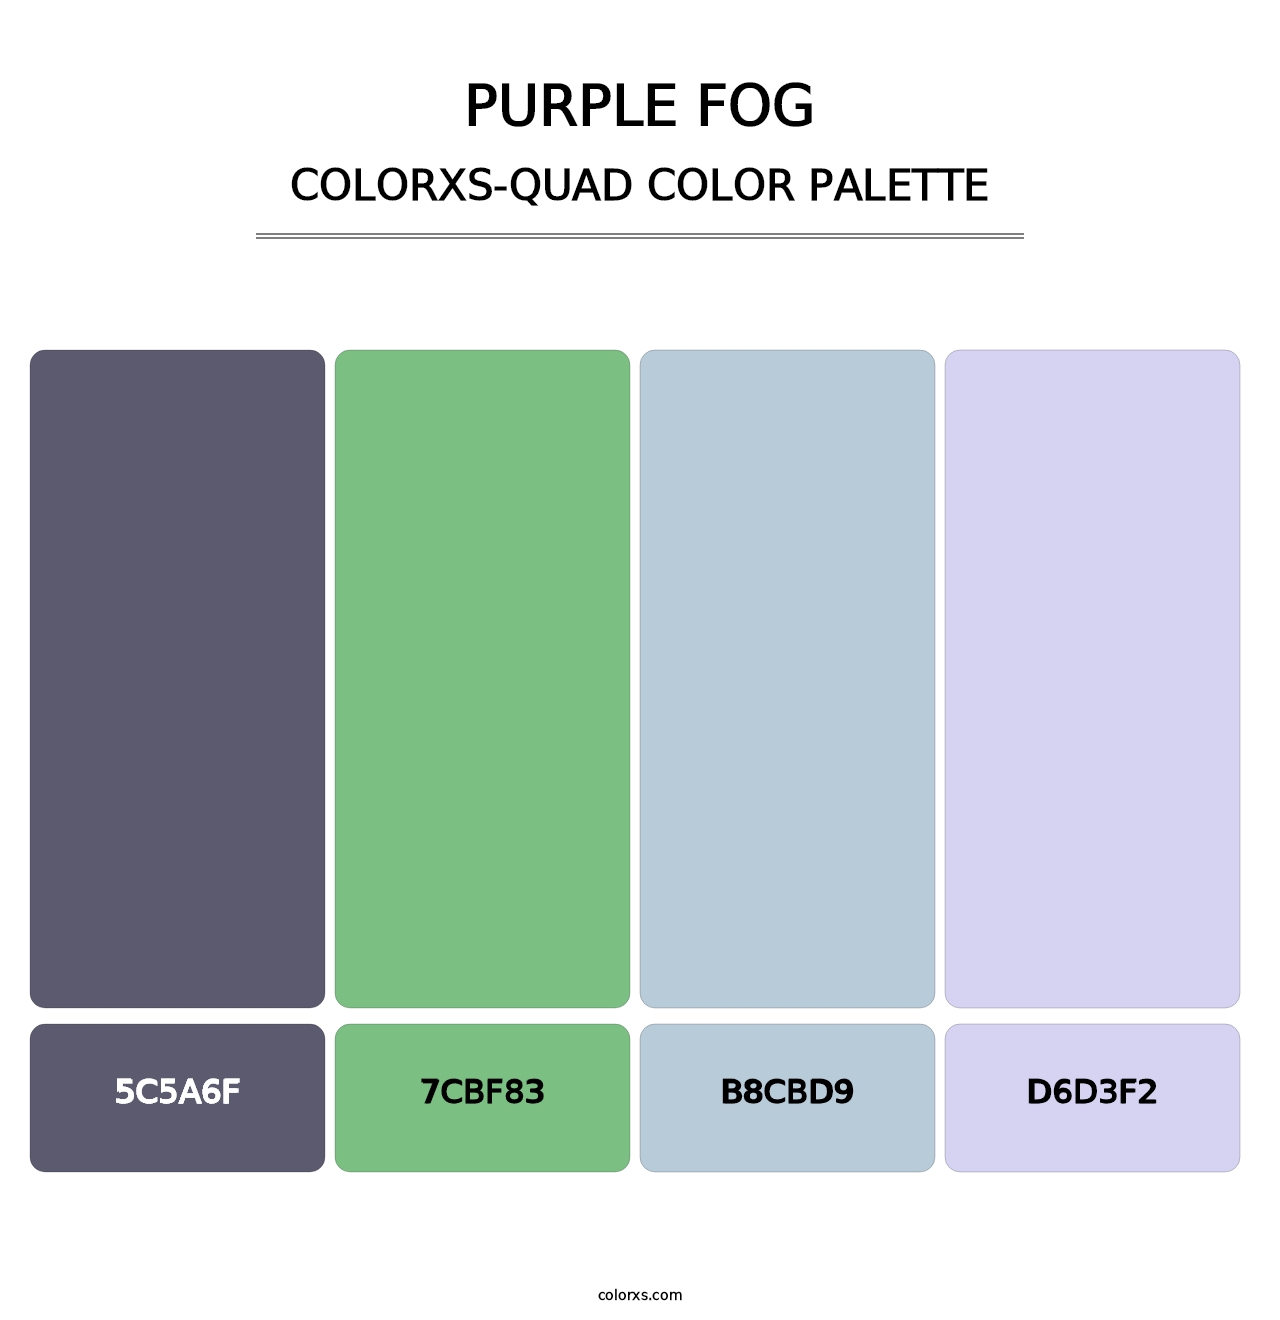 Purple Fog - Colorxs Quad Palette